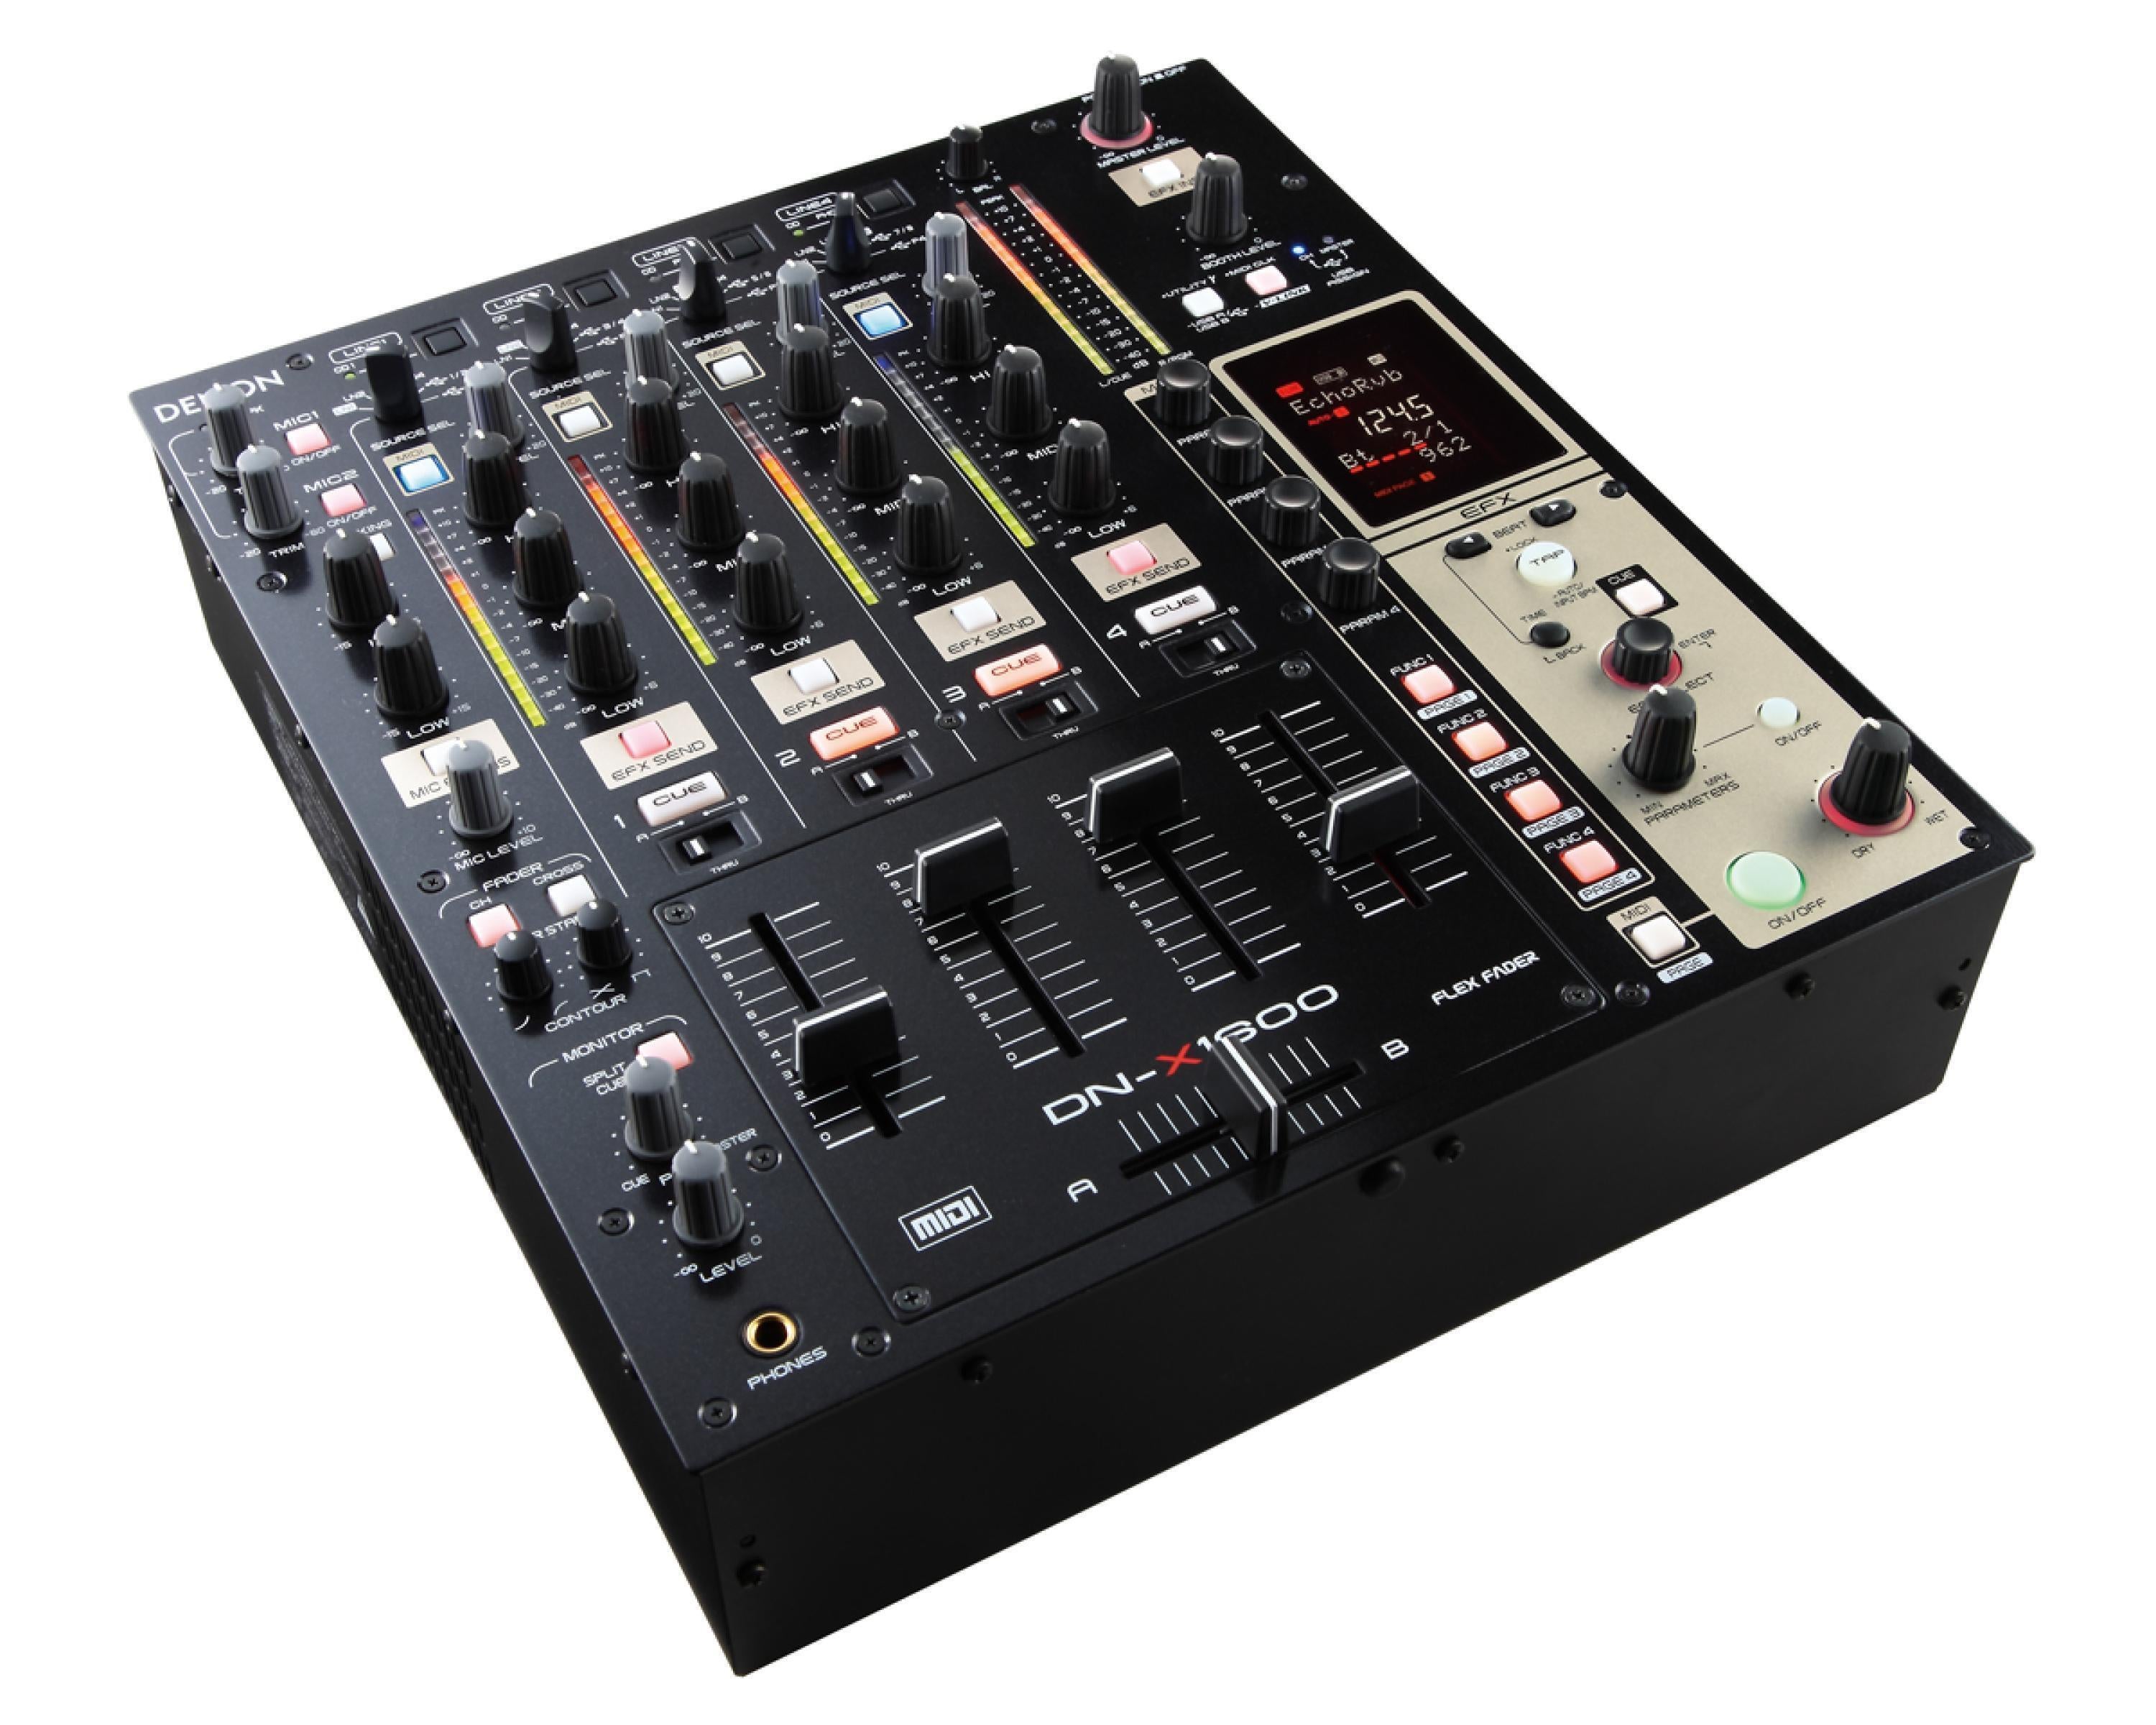 DENON DN-X1600 プロフェッショナル デジタル DJミキサー - 楽器、器材